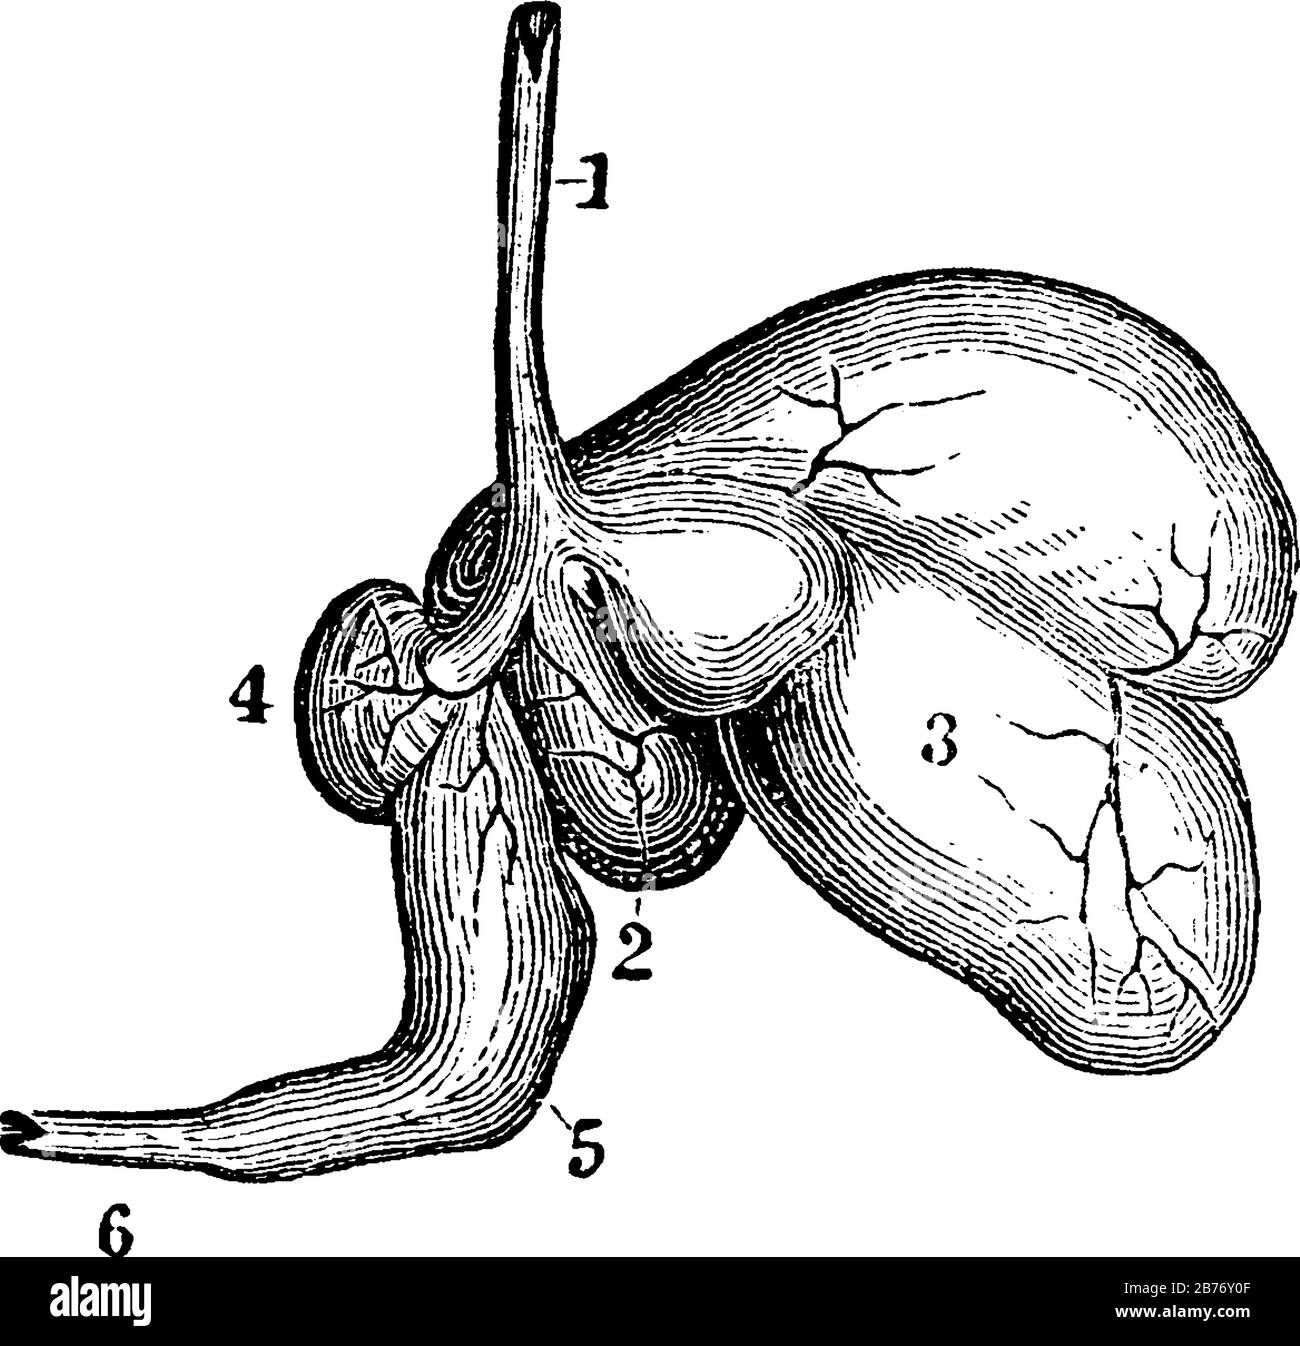 I ruminanti, la pecora, hanno uno stomaco con quattro cavità. Etichette: 1, esofago; 2, rumine; 3, reticulum; 4, omasum; 5, abomasum o caglio; 6, intestino, Illustrazione Vettoriale